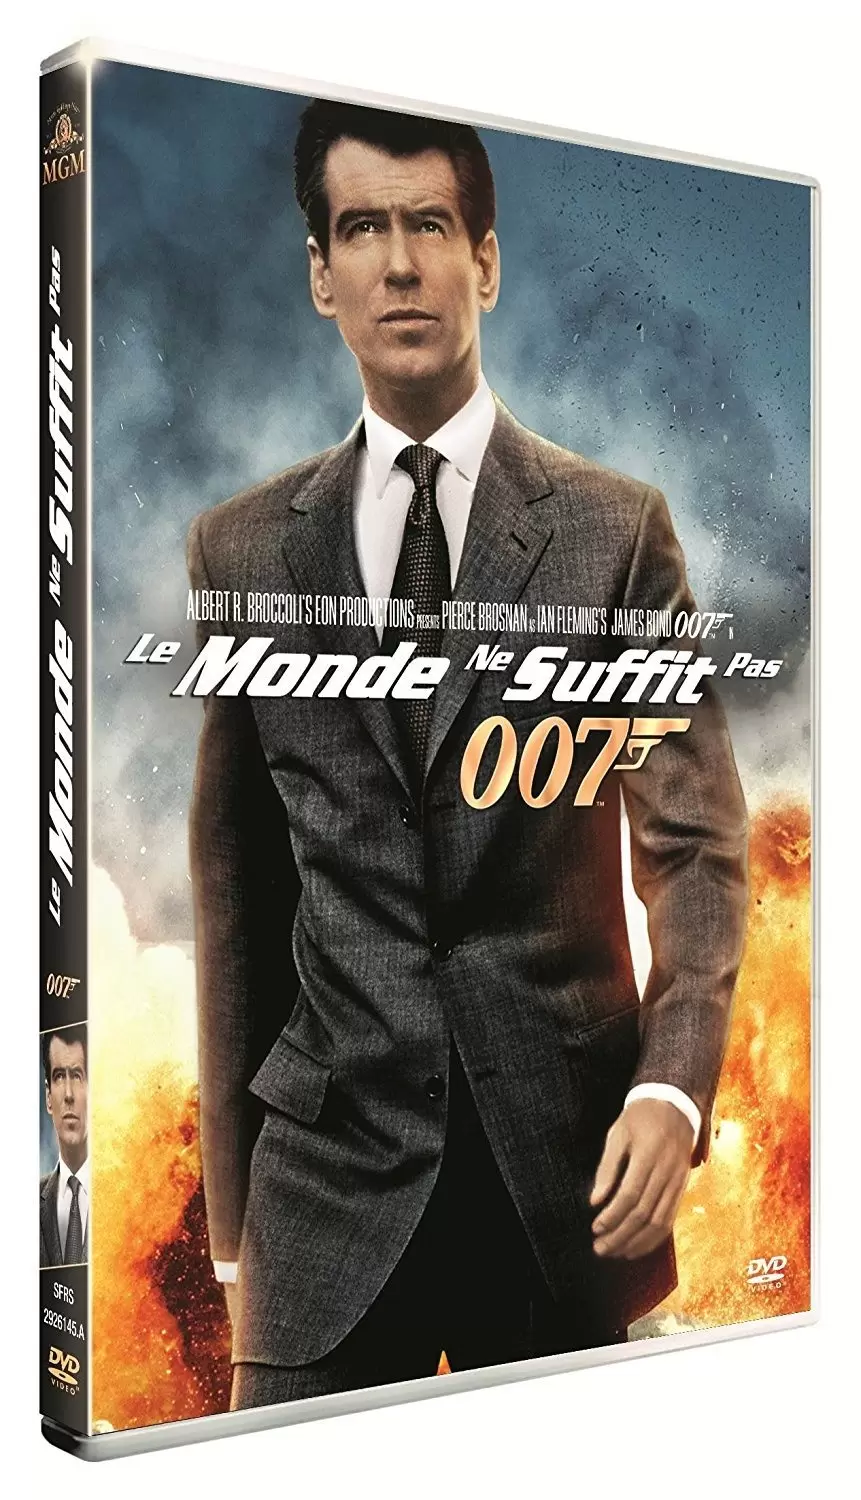 James Bond - Le Monde ne suffit pas